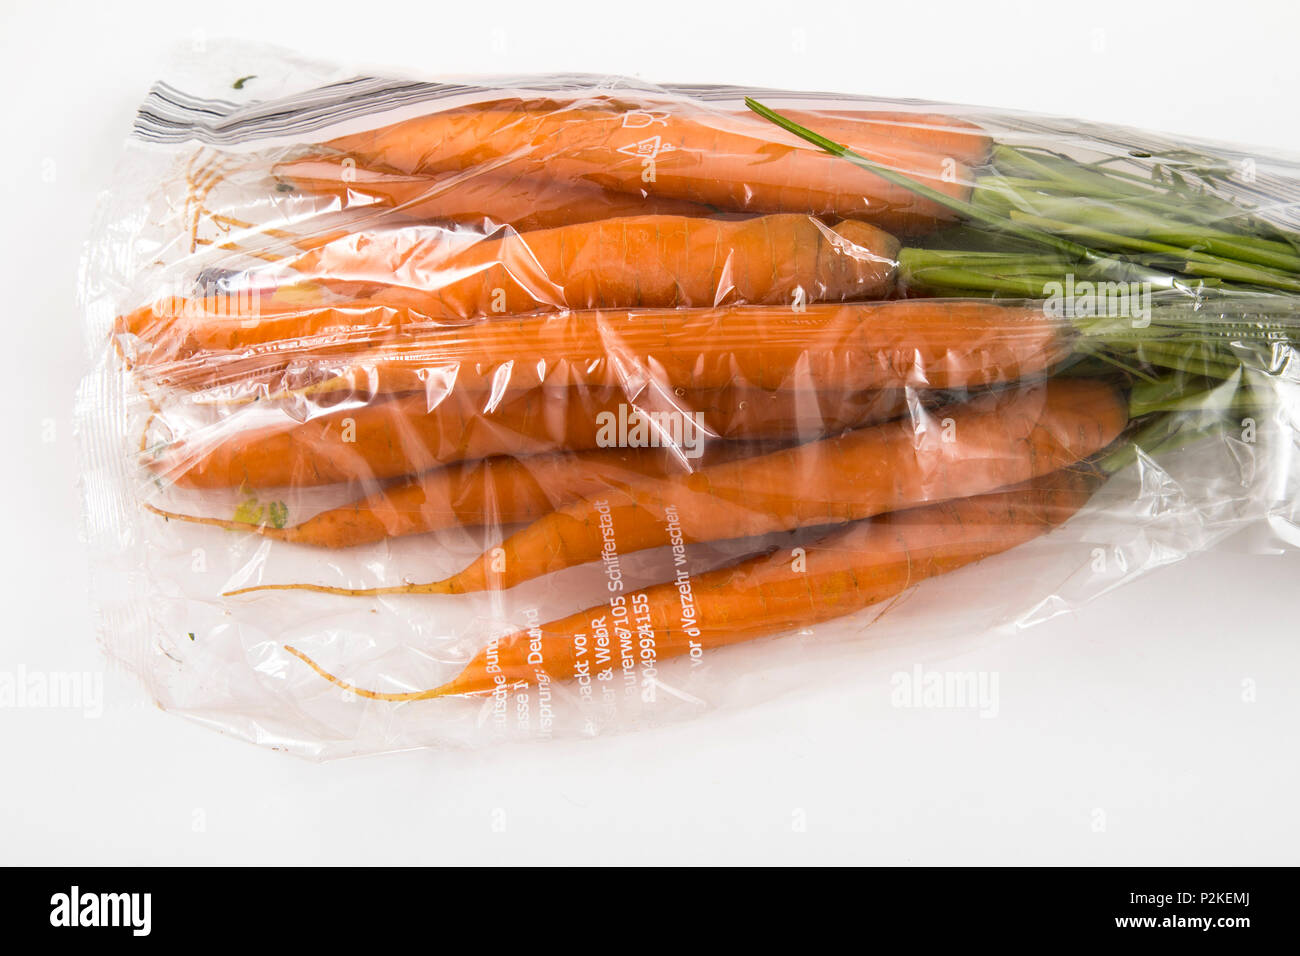 Il cibo fresco, verdure , ciascuno singolarmente confezionati in plastica tutto il cibo è disponibile nello stesso supermercato anche senza imballaggio plastico, auto Foto Stock